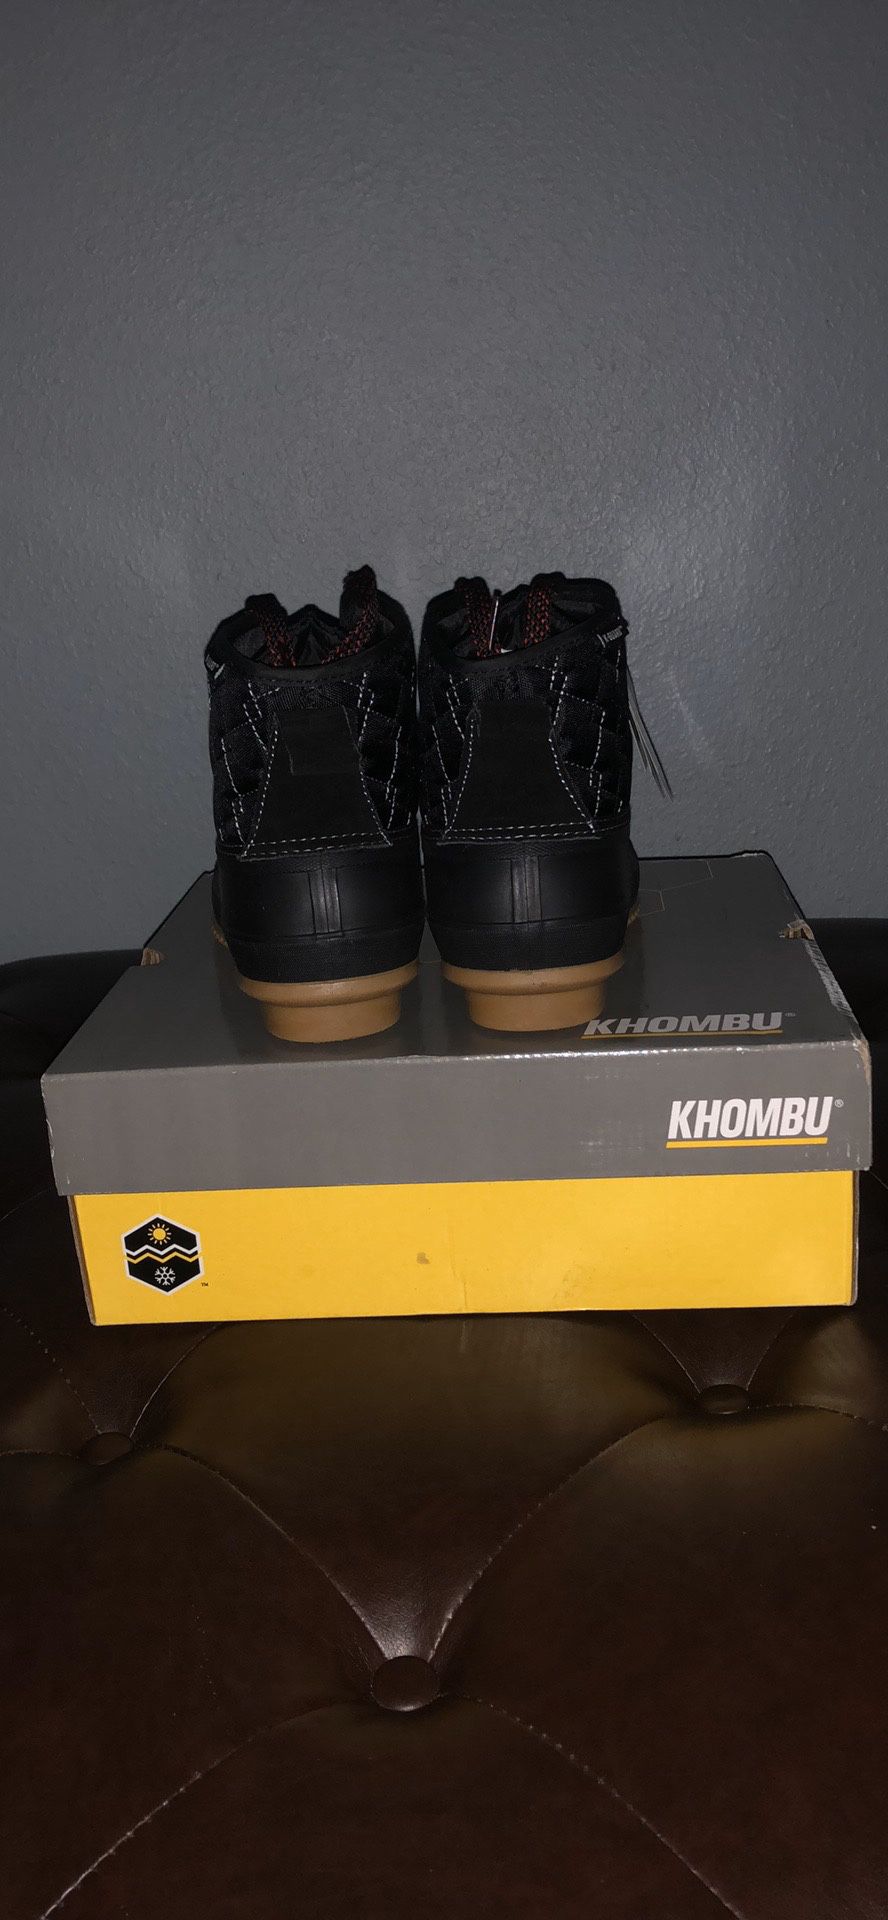 Khombu boots size 9